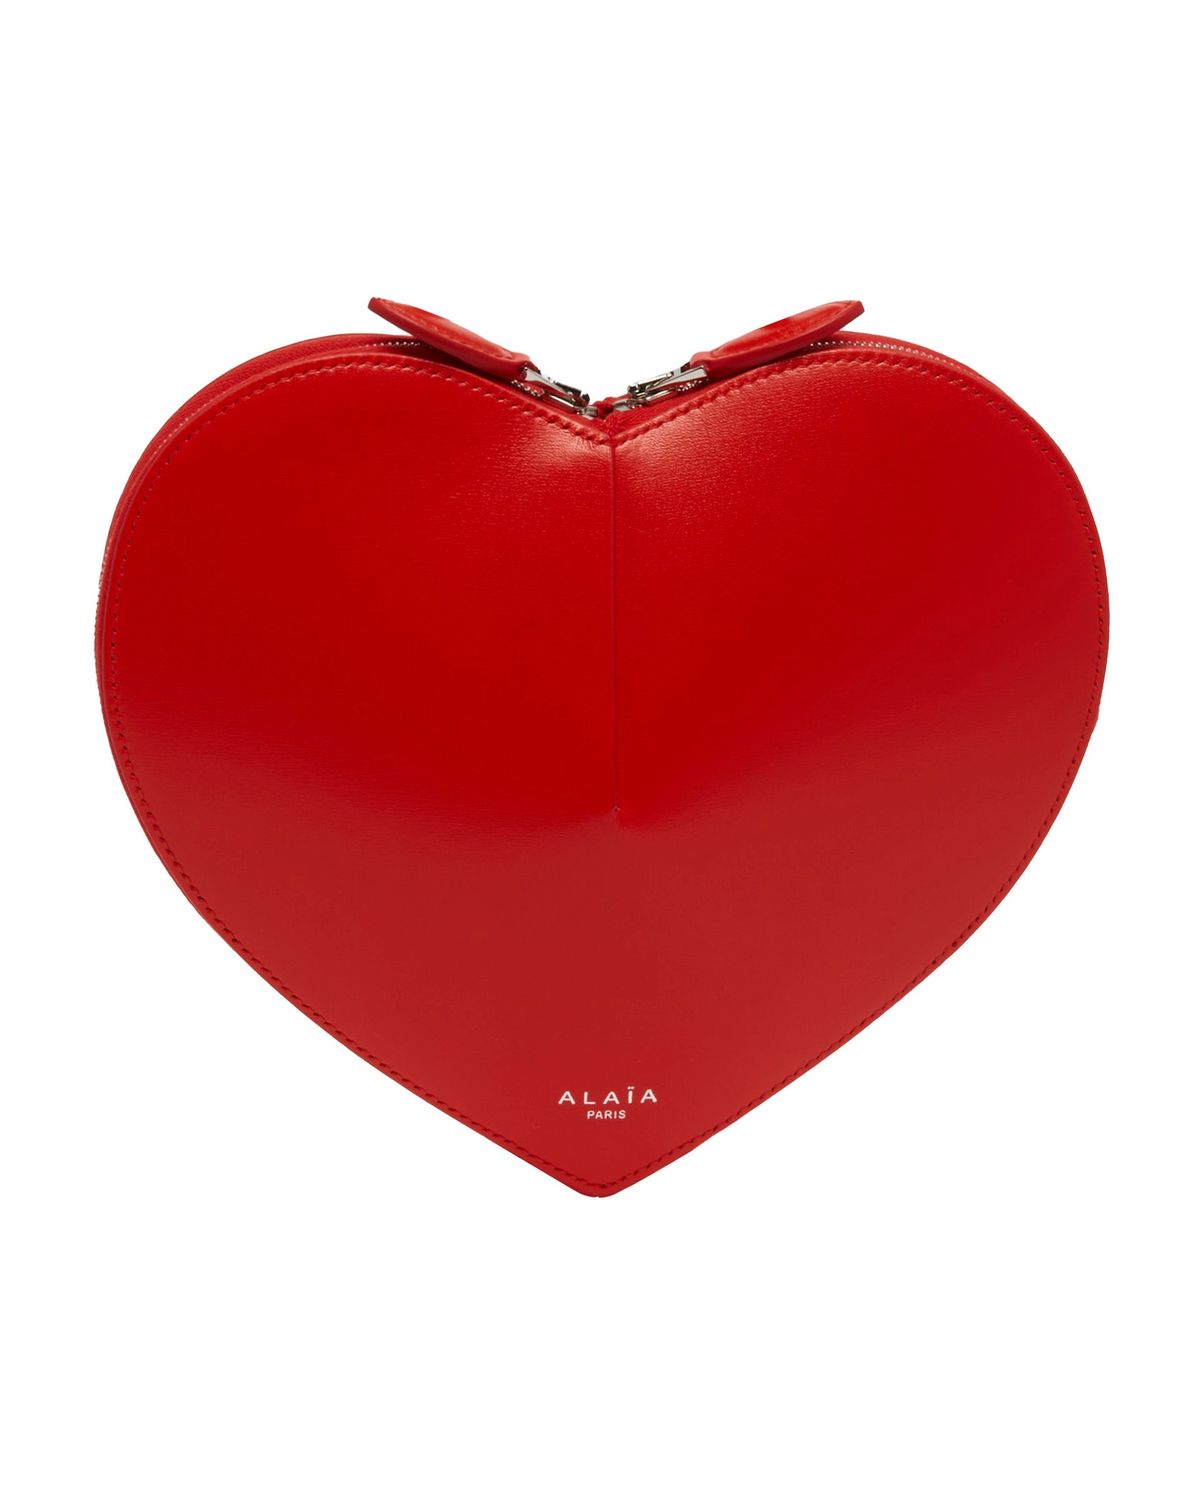 ALAIA Le Coeur Handbag in red